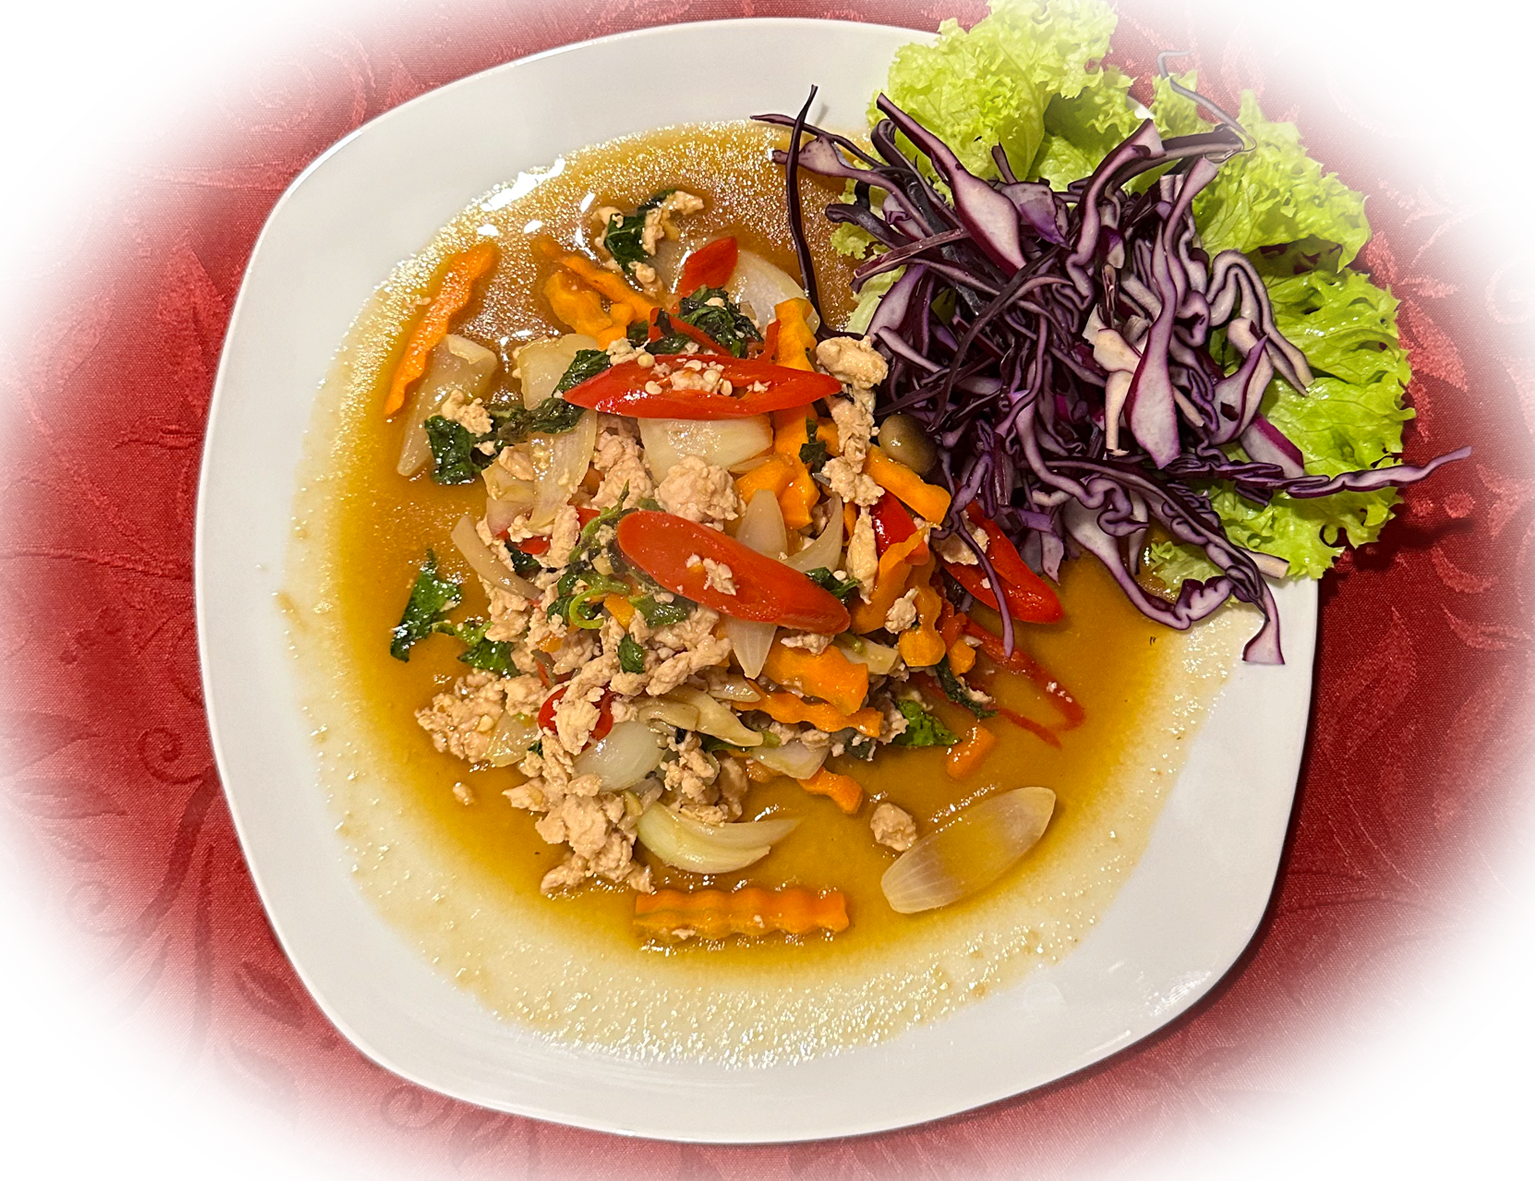 Ein köstliches thailändisches Gericht, bei dem zartes Fleisch mit frischem Basilikum in einer würzig